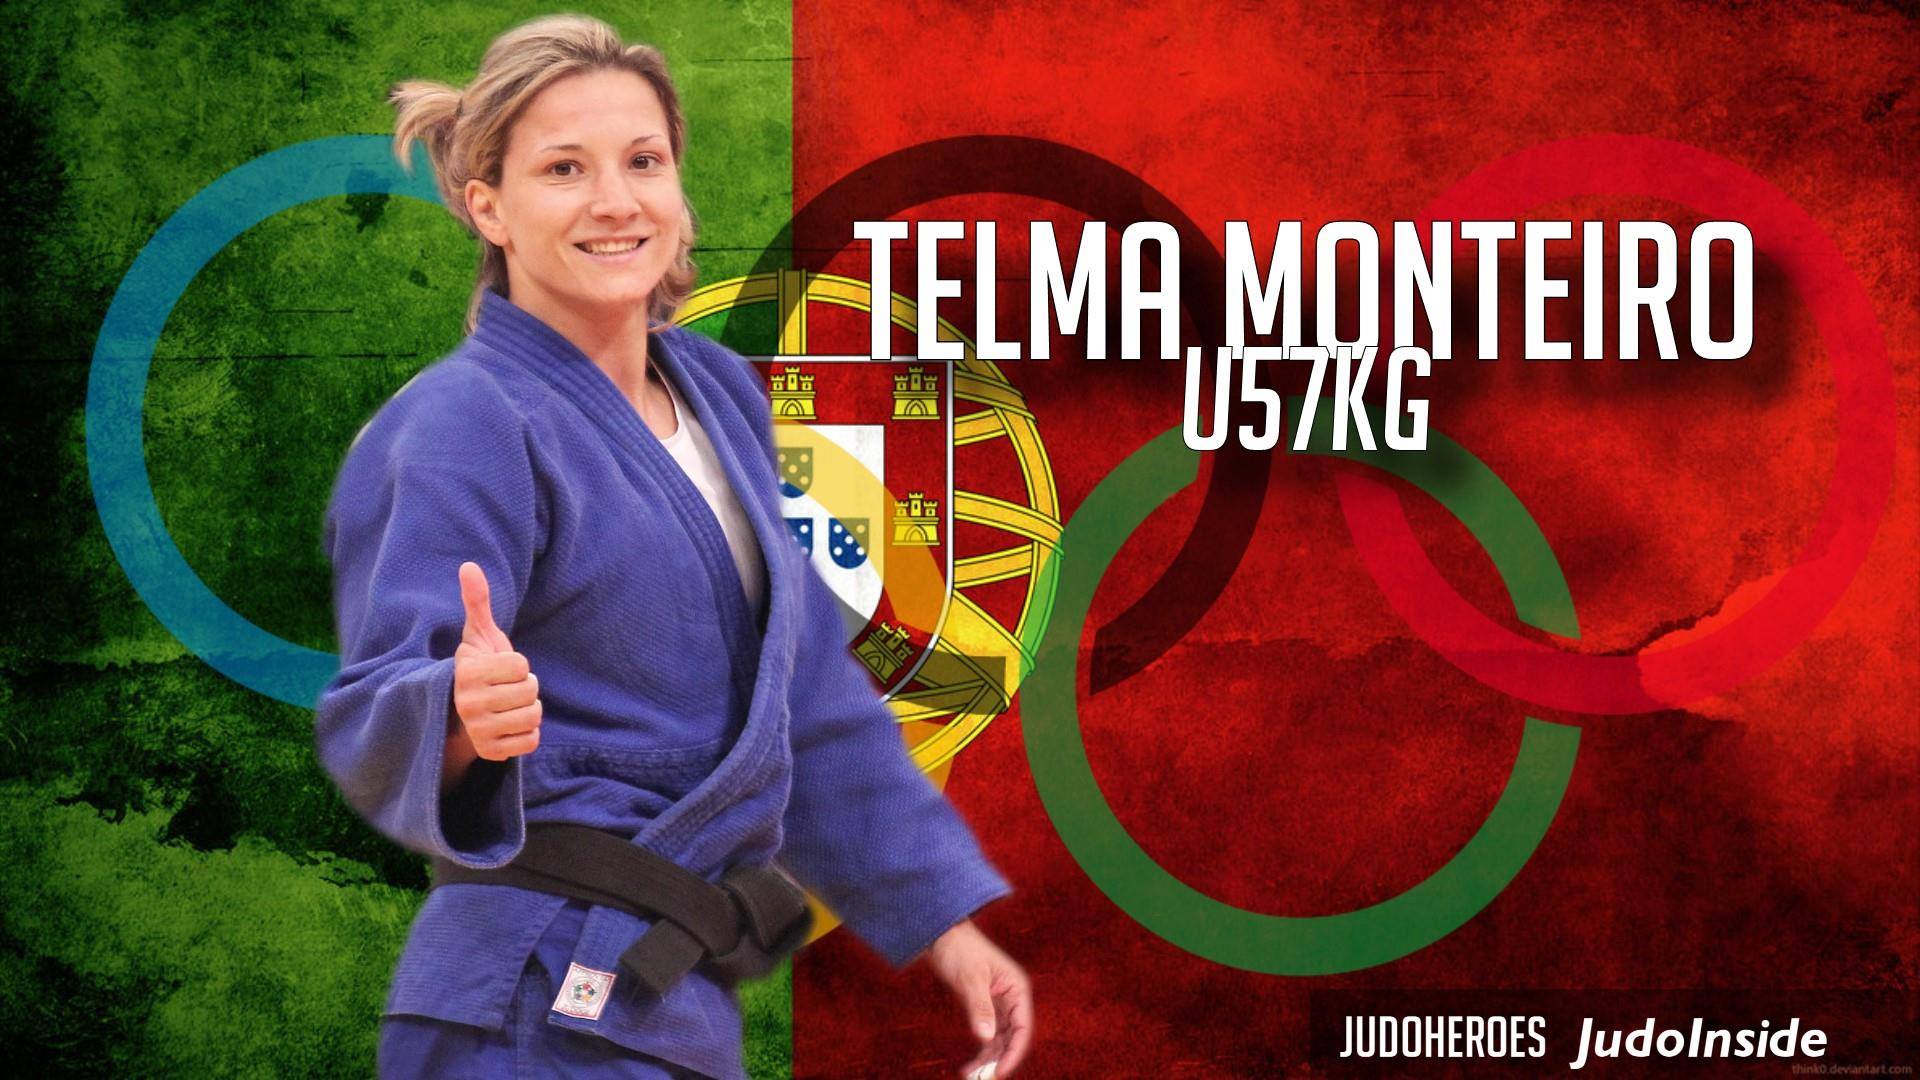 Telma Monteiro